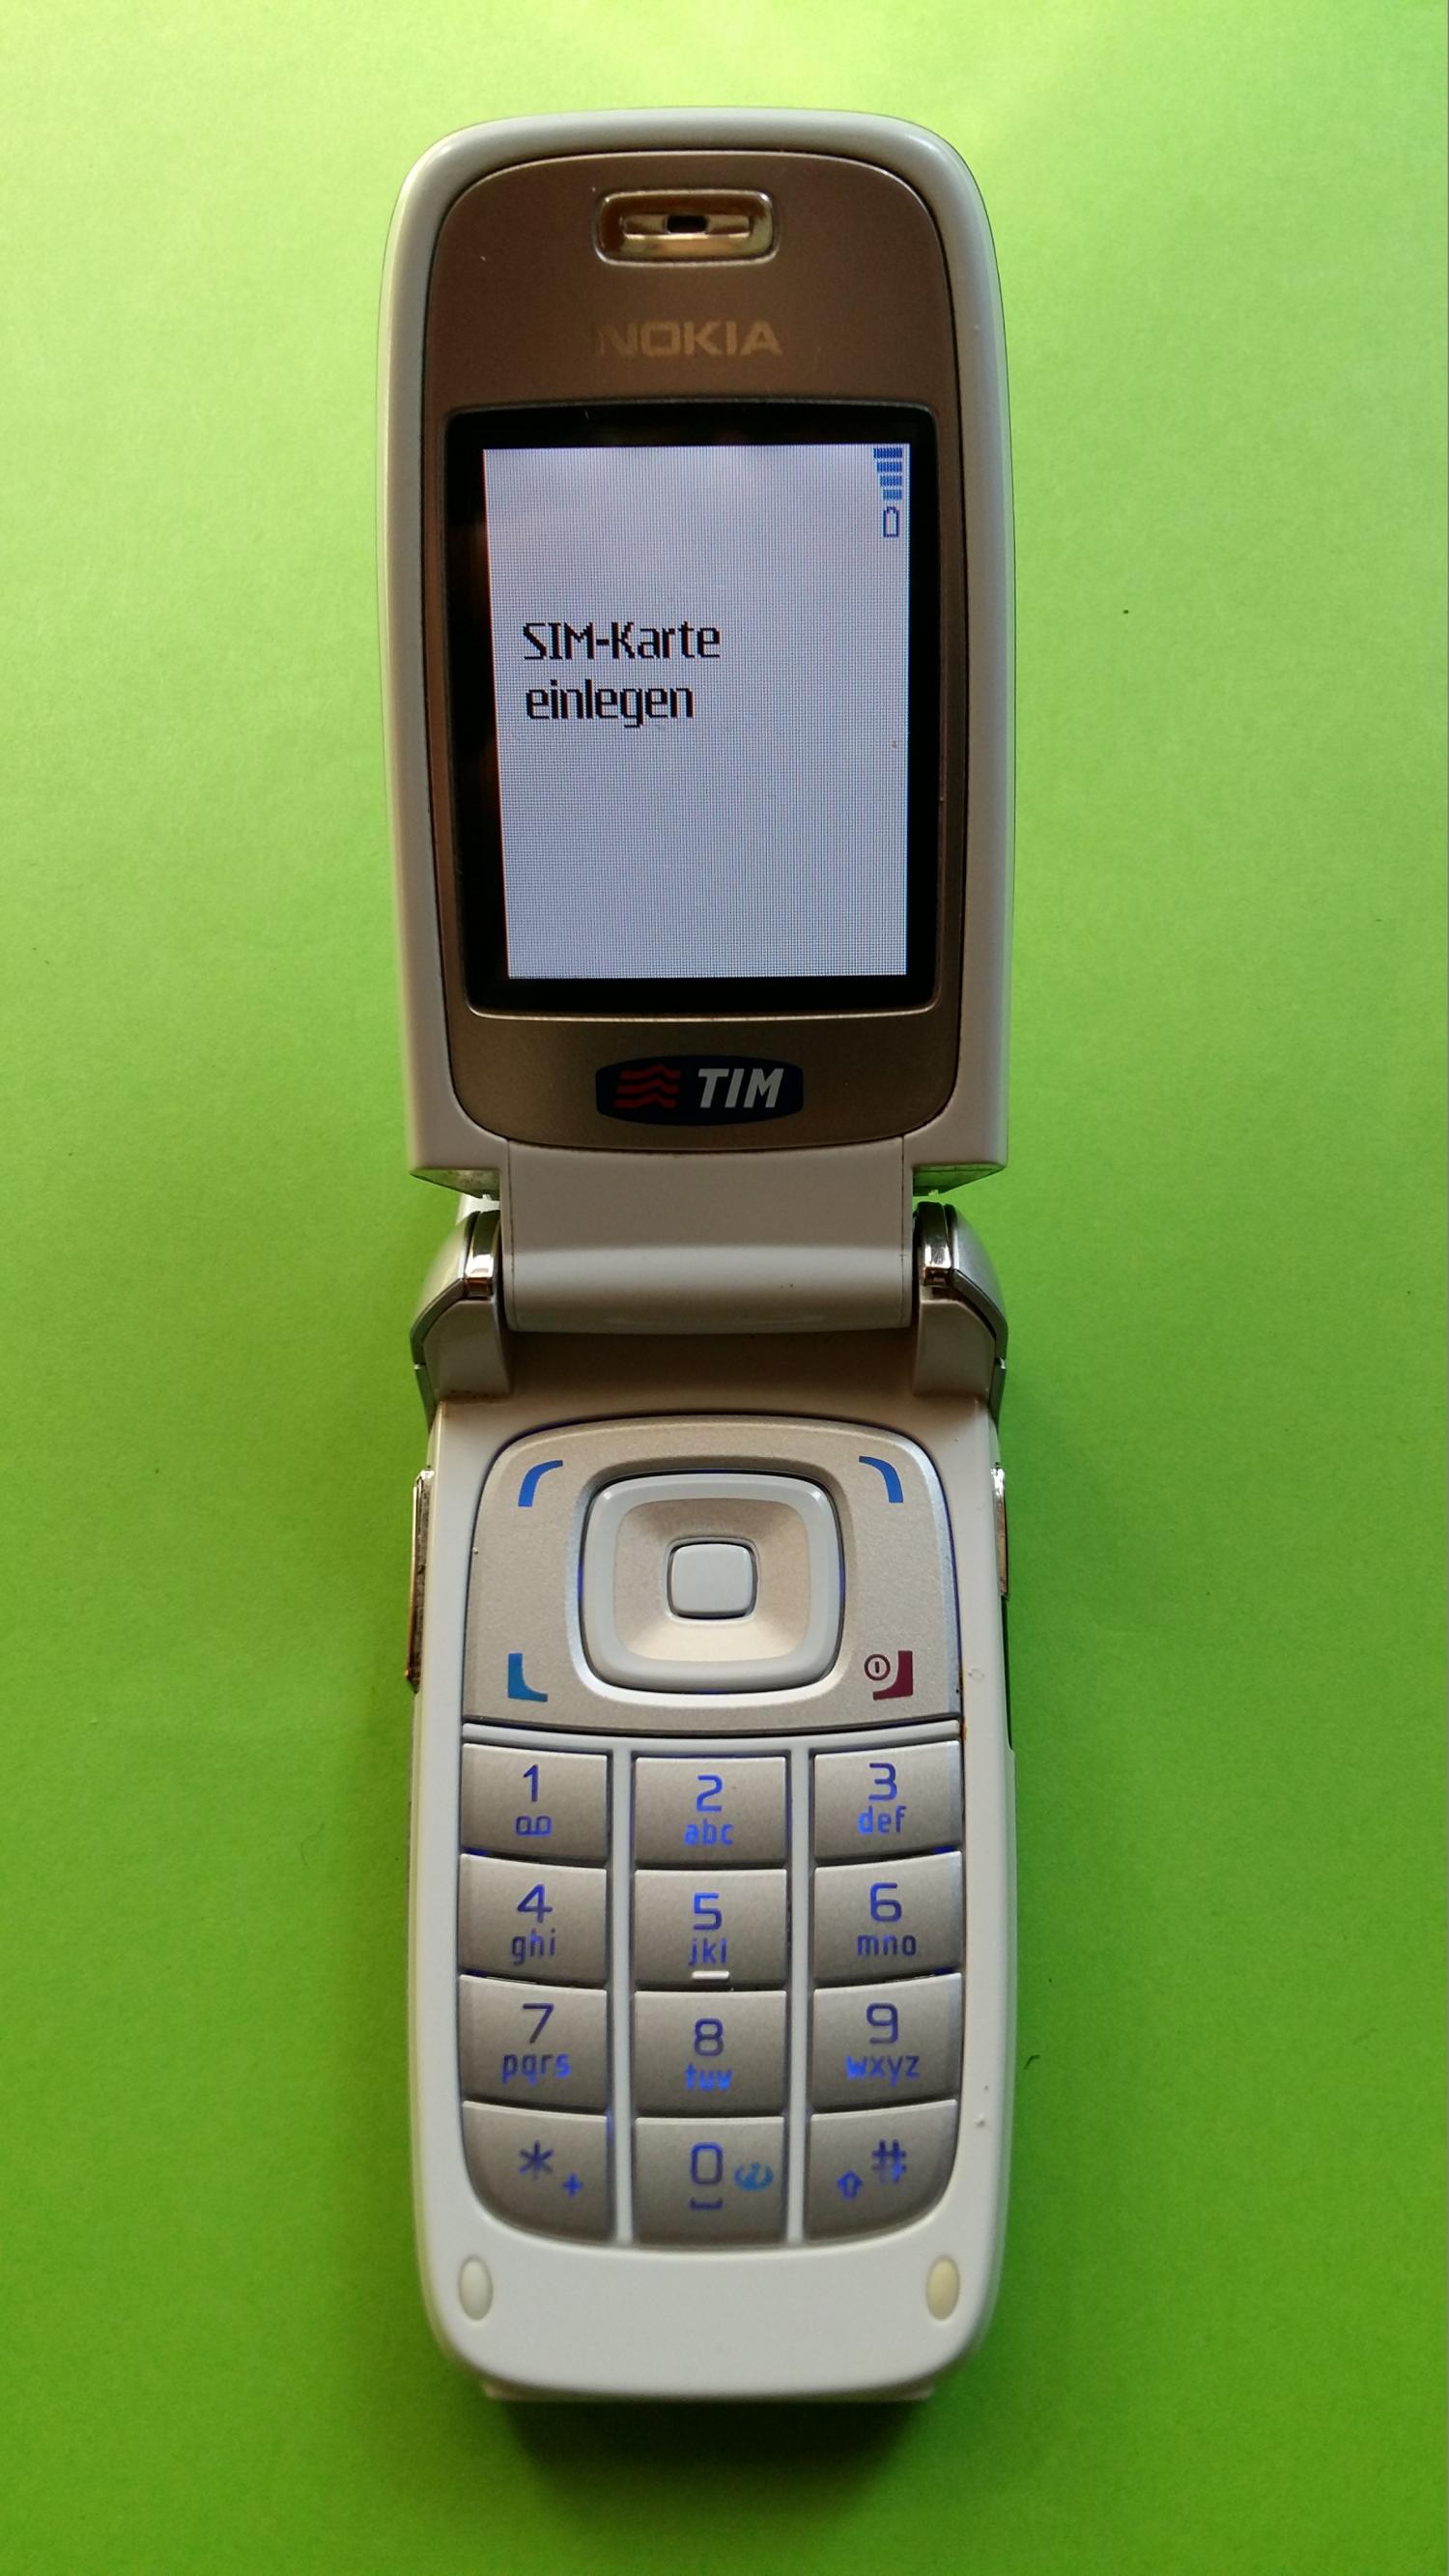 image-7323254-Nokia 6101 (1)2.jpg